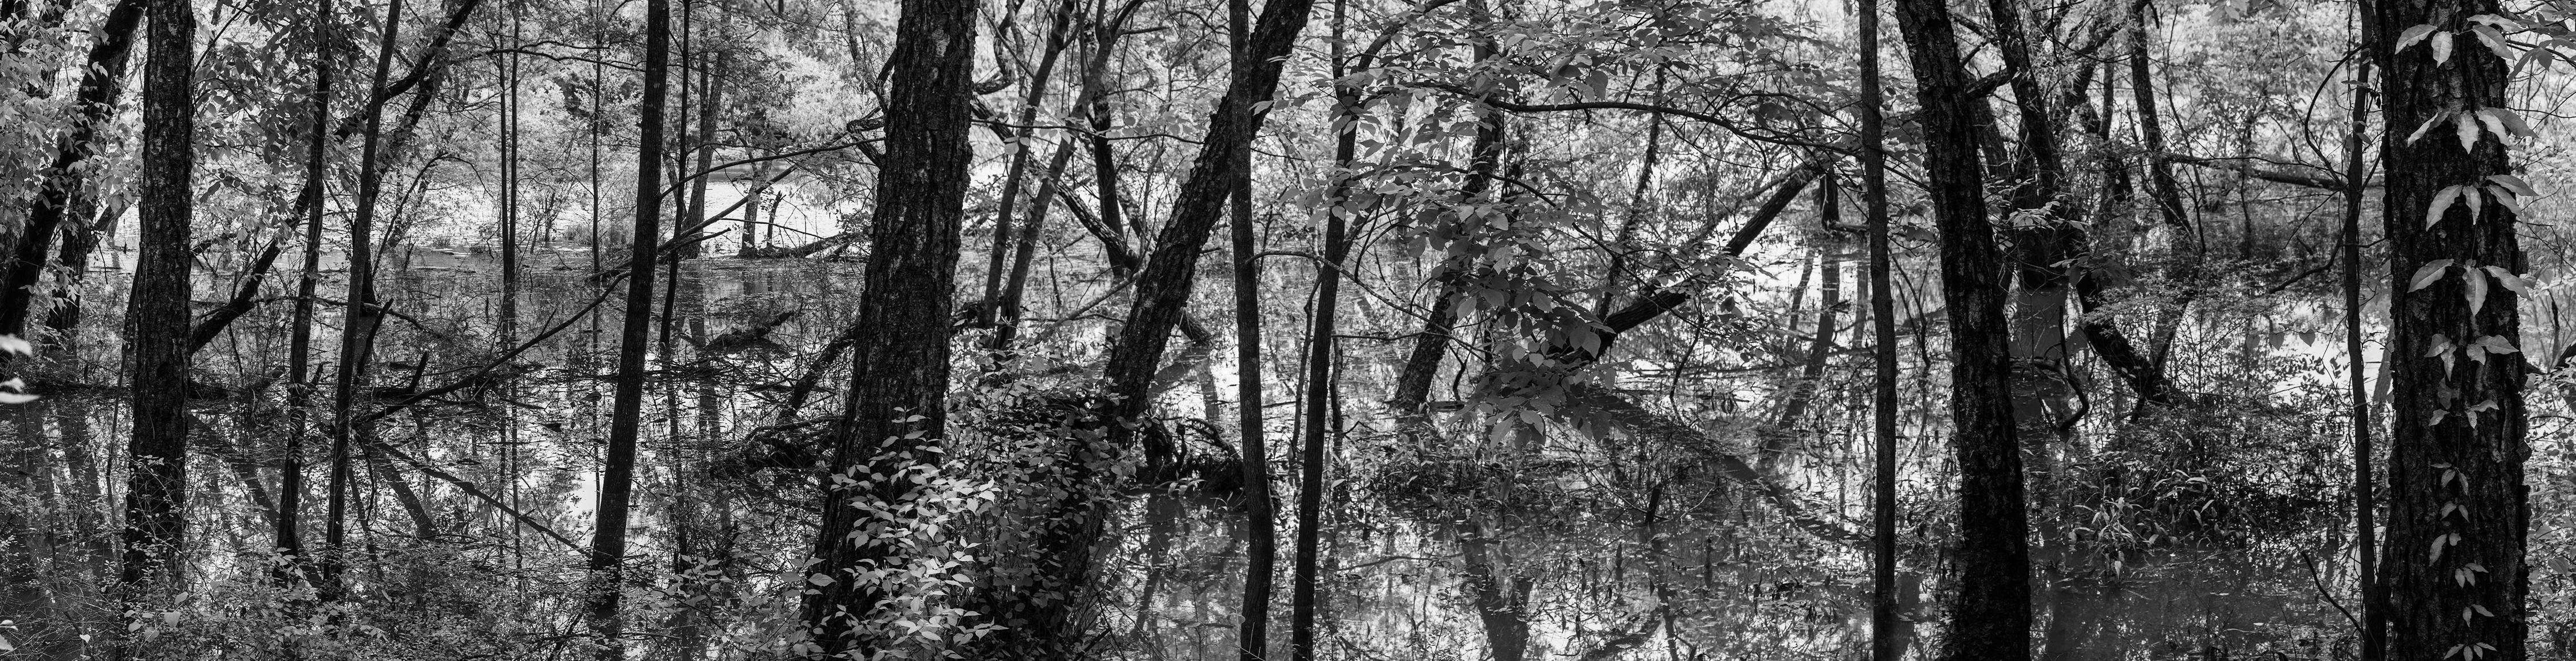 Black and White Photograph Richard Skoonberg - Photographie de paysage en noir et blanc « Printemps sur la Chattahoochee » - Eliot Porter